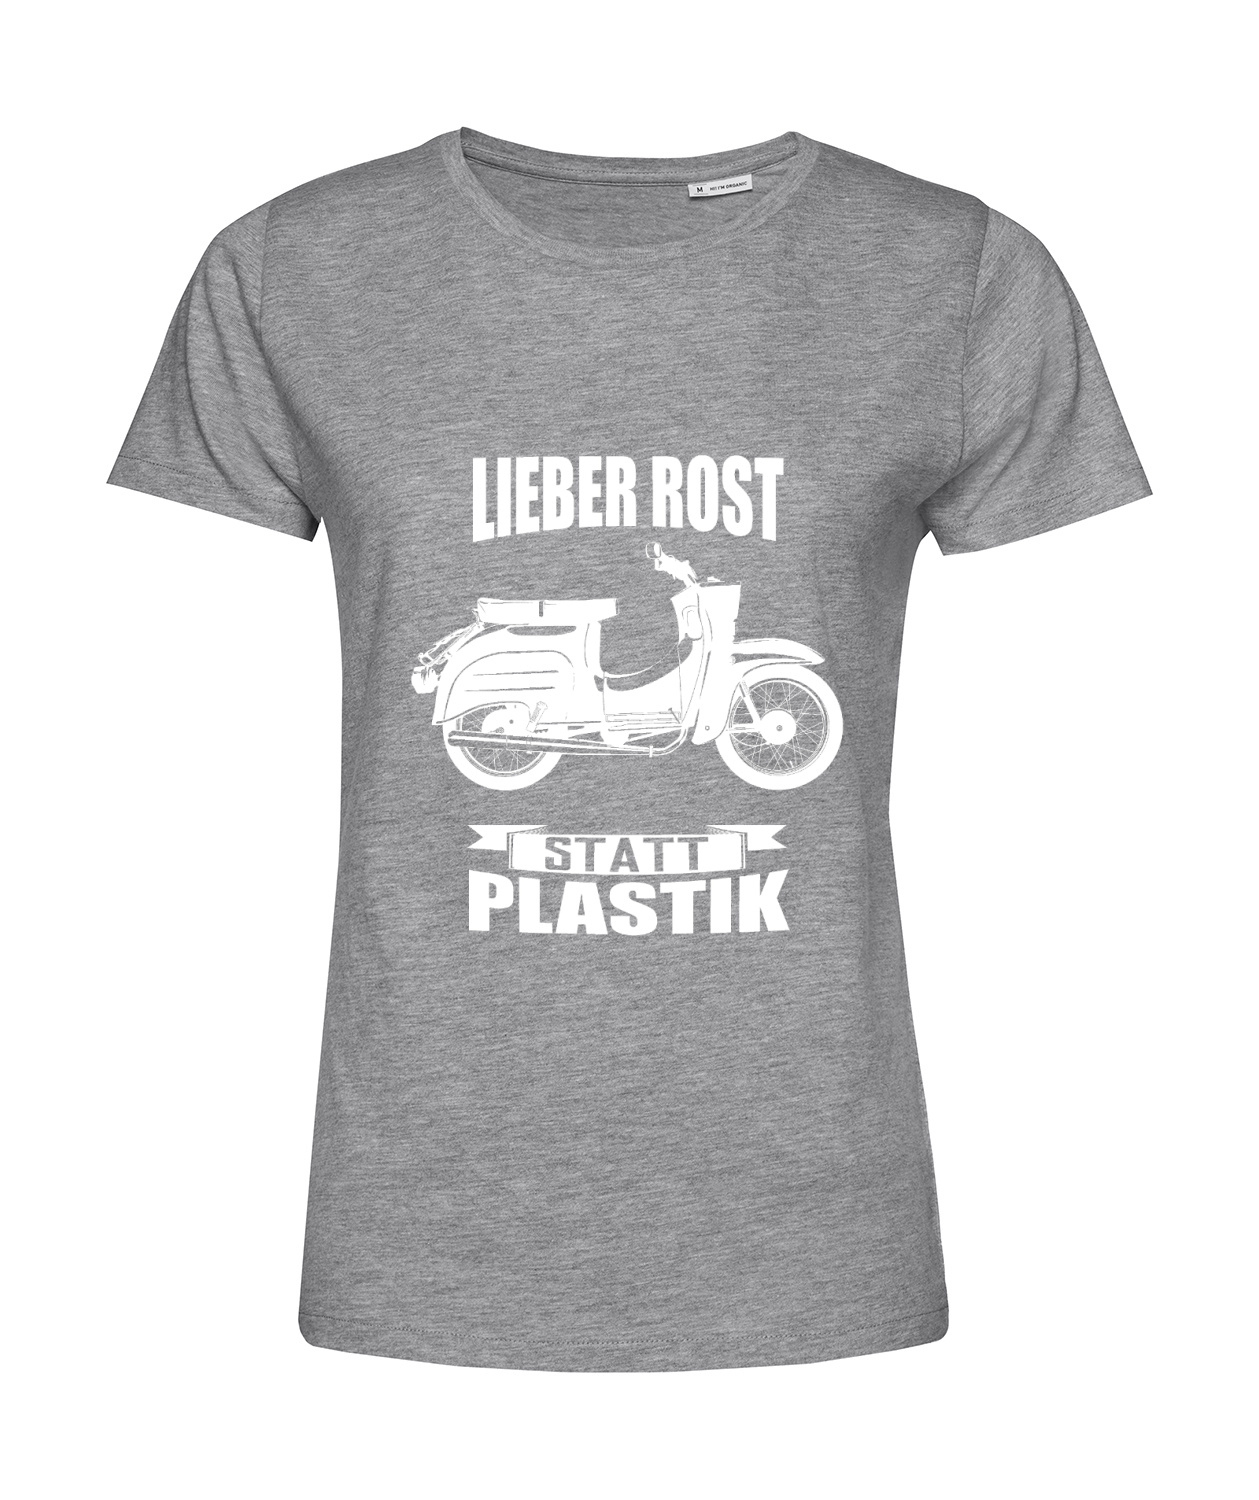 Nachhaltiges T-Shirt Damen 2Takter - Lieber Rost statt Plastik Schwalbe